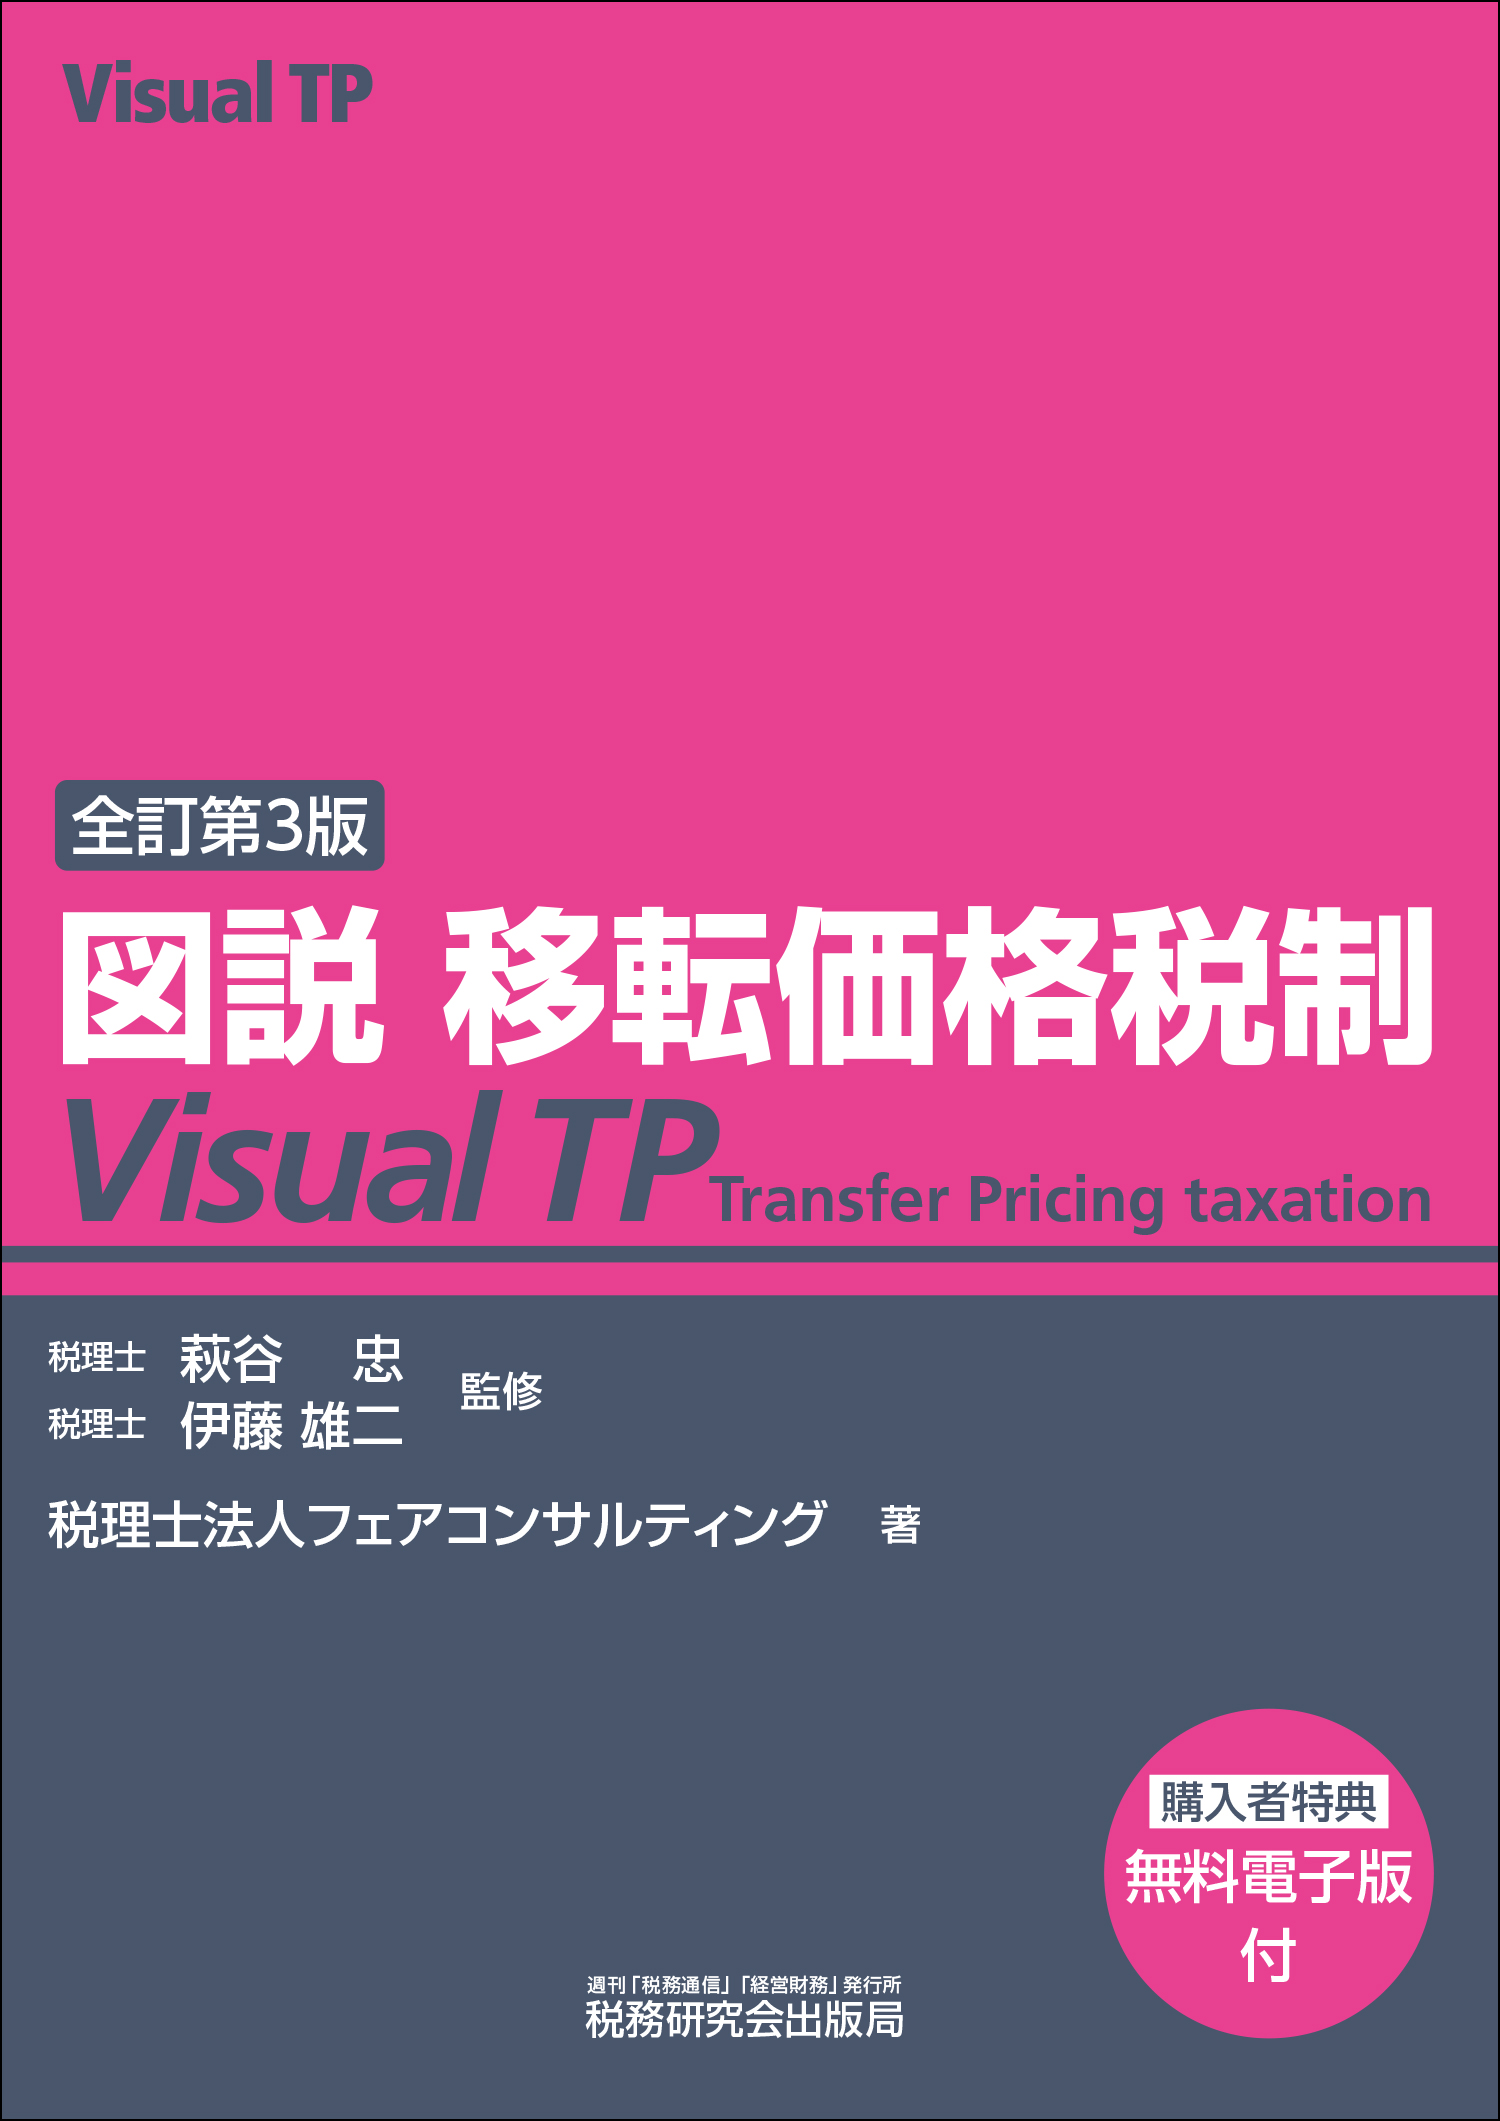 全訂第3版

図説 移転価格税制 Visual TP